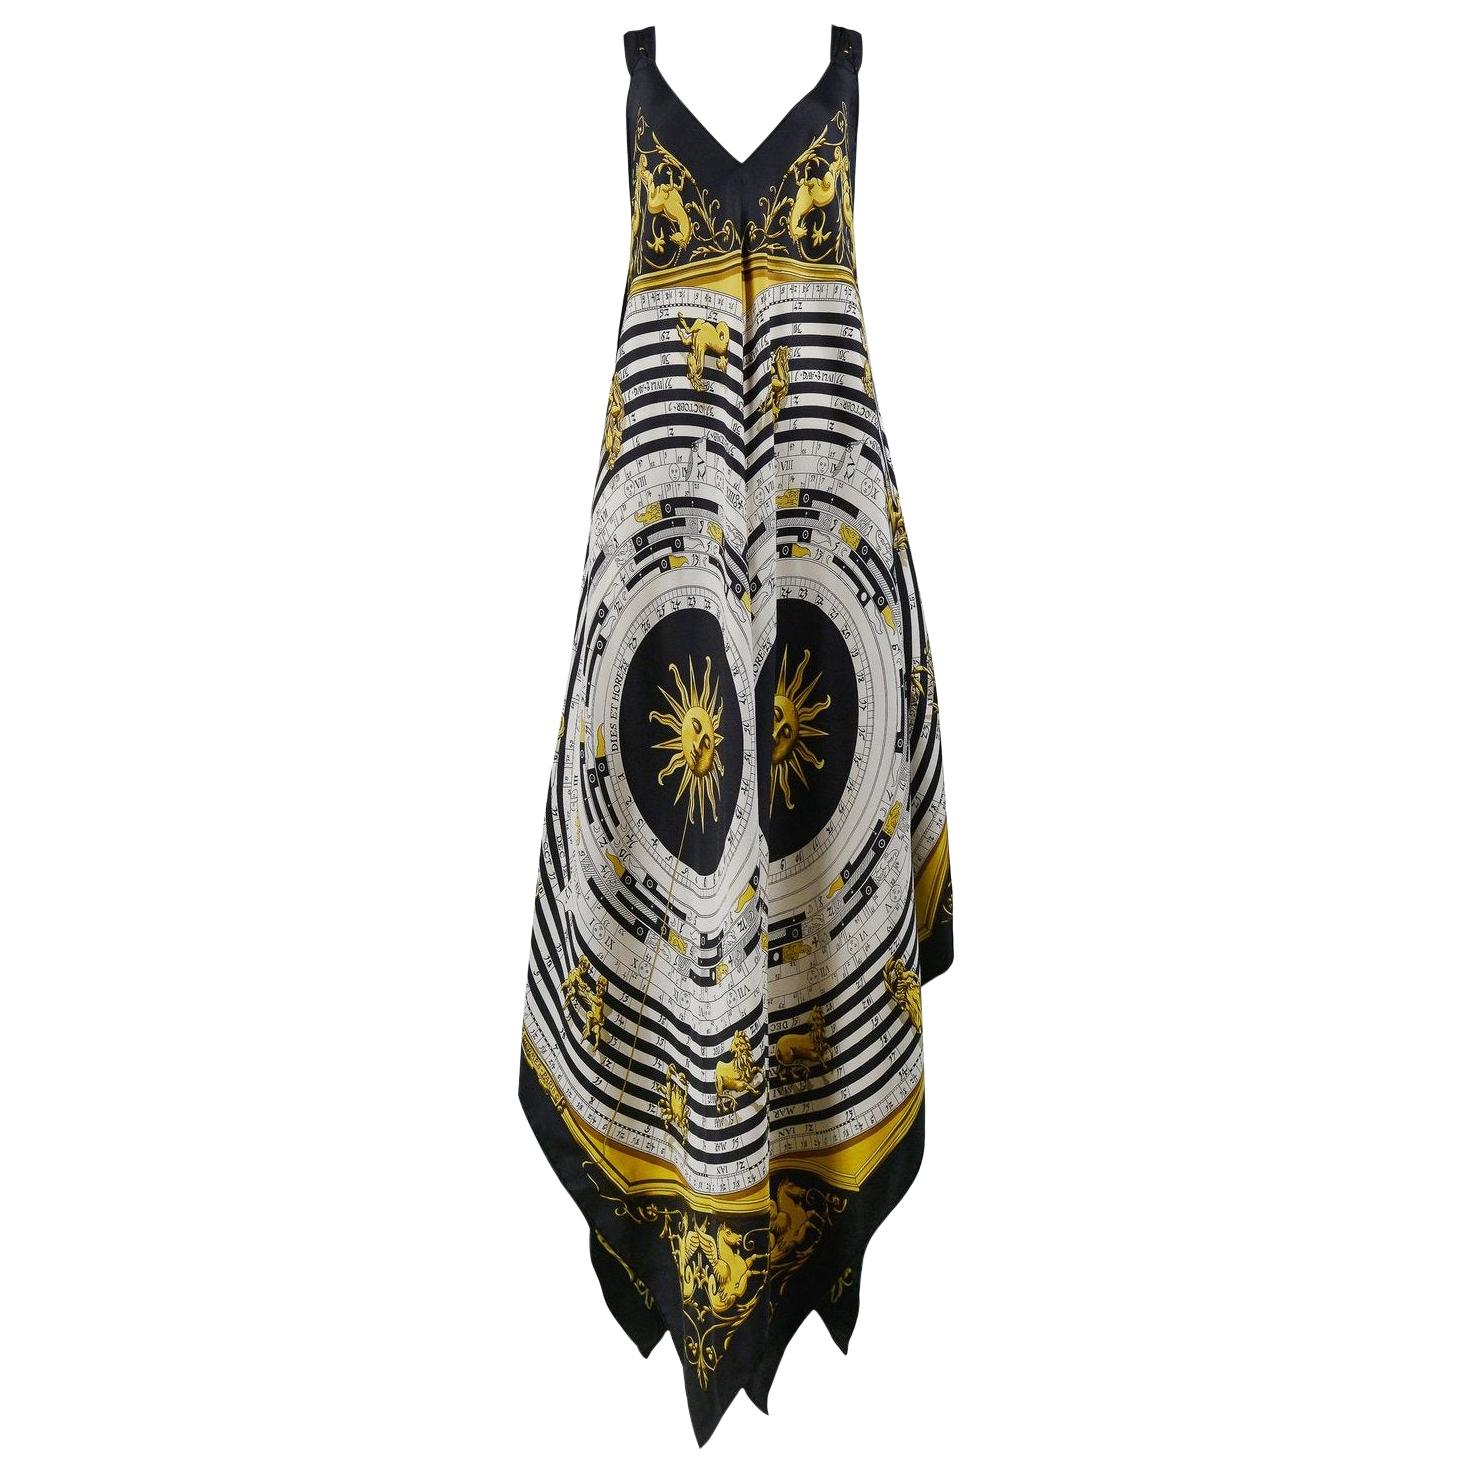 Hermes Dress - 40 For Sale on 1stDibs | hermes dresses, hermes 